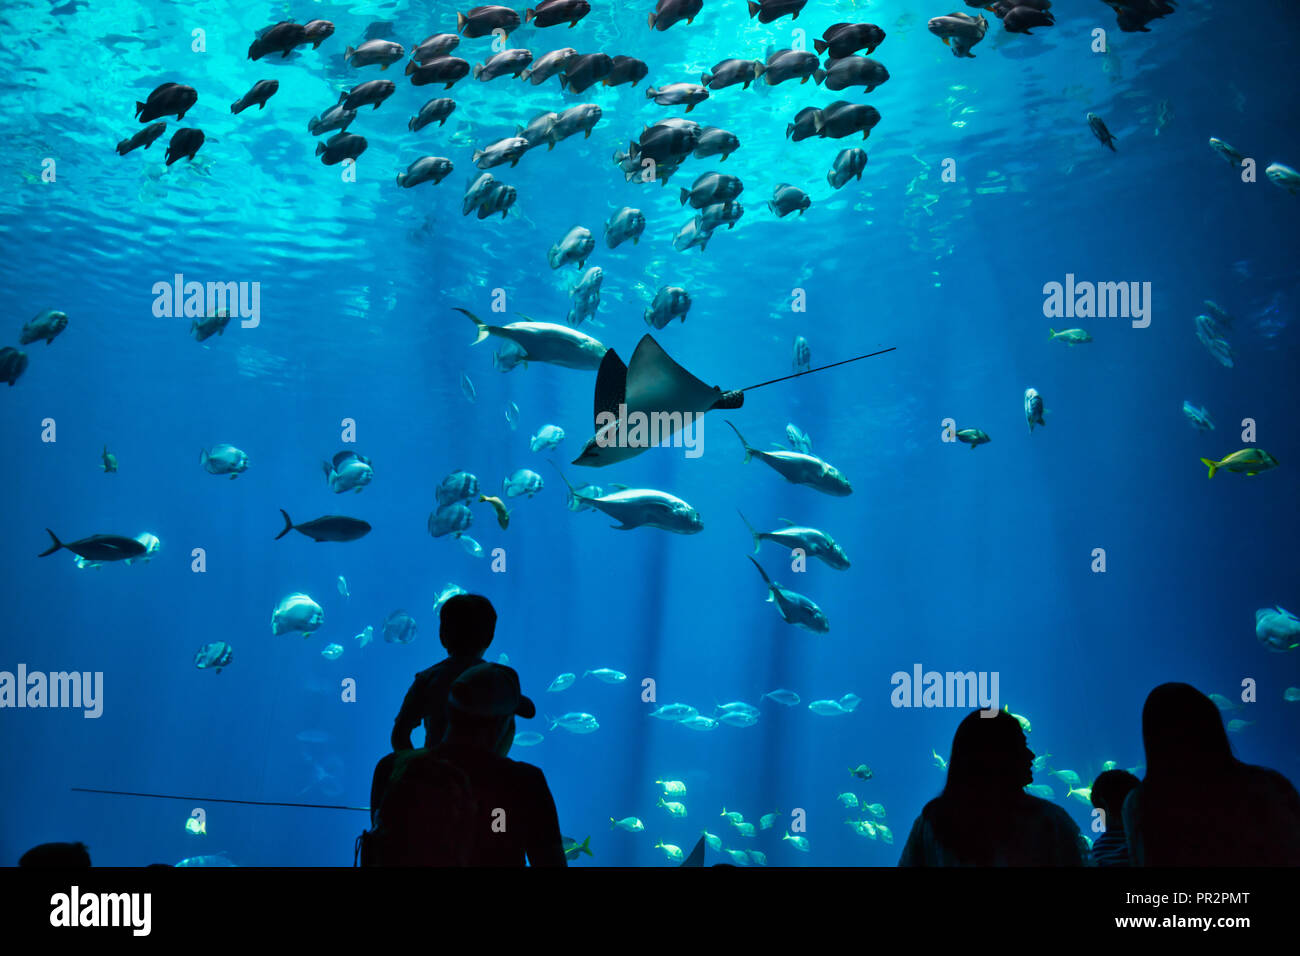 Père et fils ainsi que d'autres silhouettes non identifiables à admirer les poissons et les rayons x dans un aquarium géant, l'eau bleue Banque D'Images